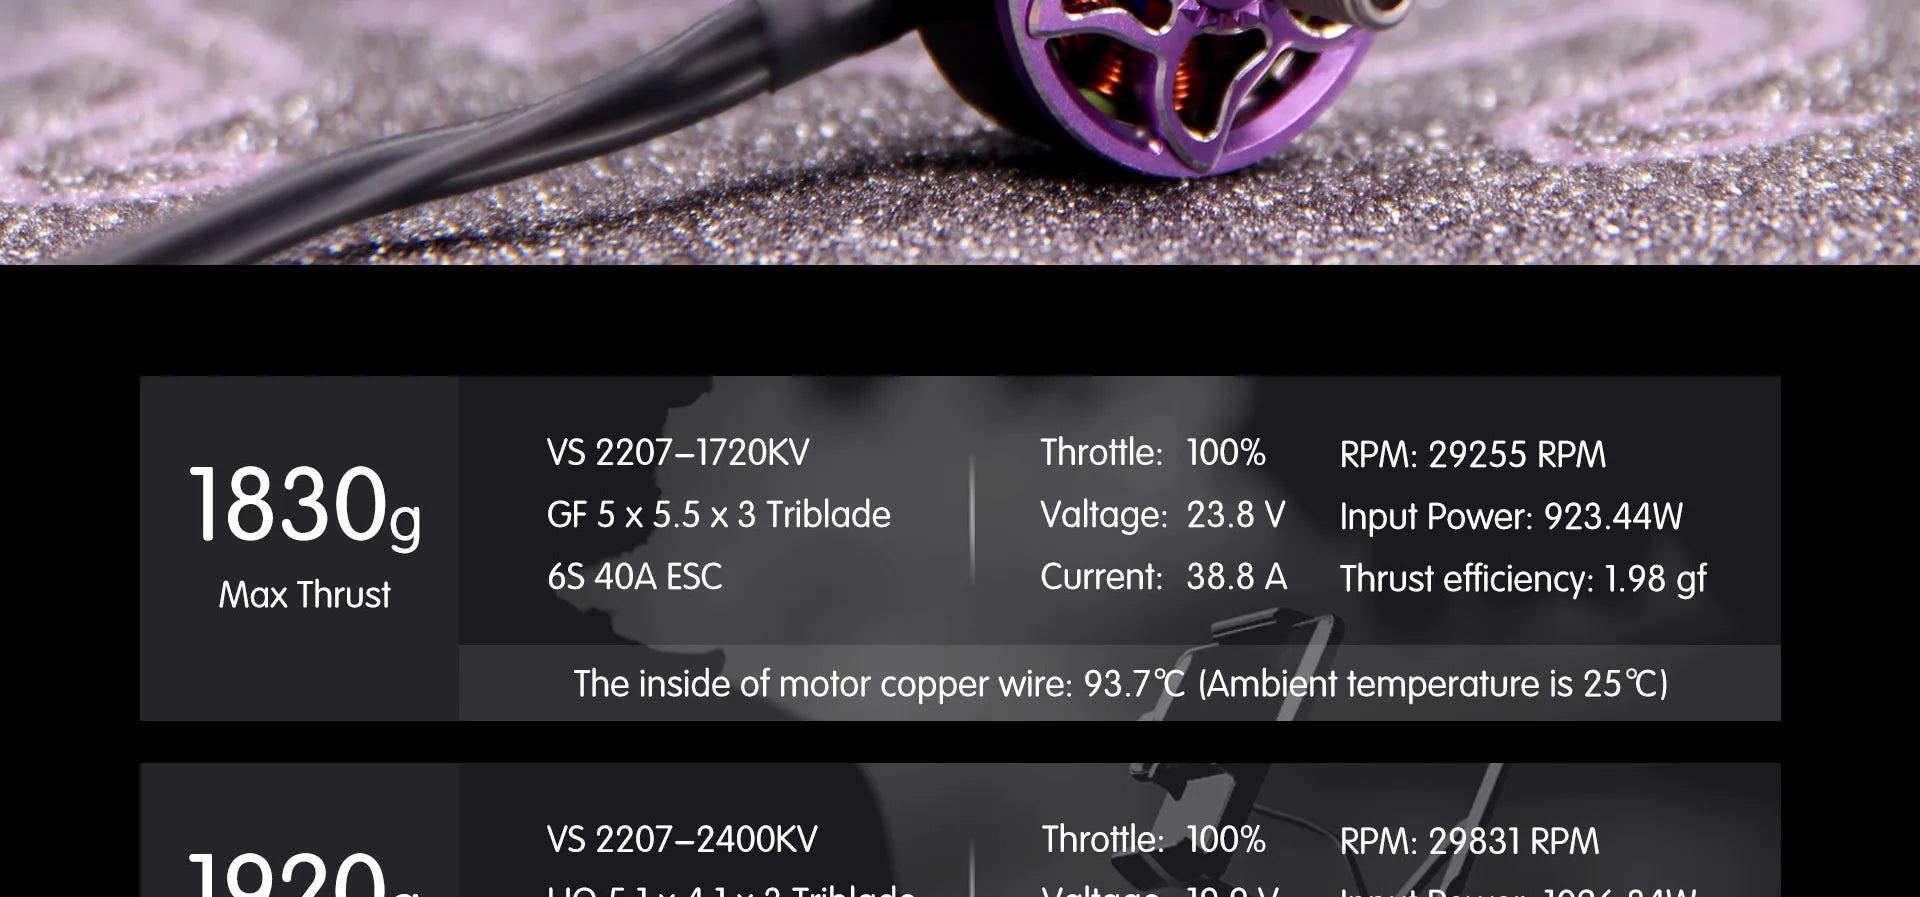 BrotherHobby VS 2207 Motor, VS 2207-1720KV Throttle: 100% RPM: 29255 R